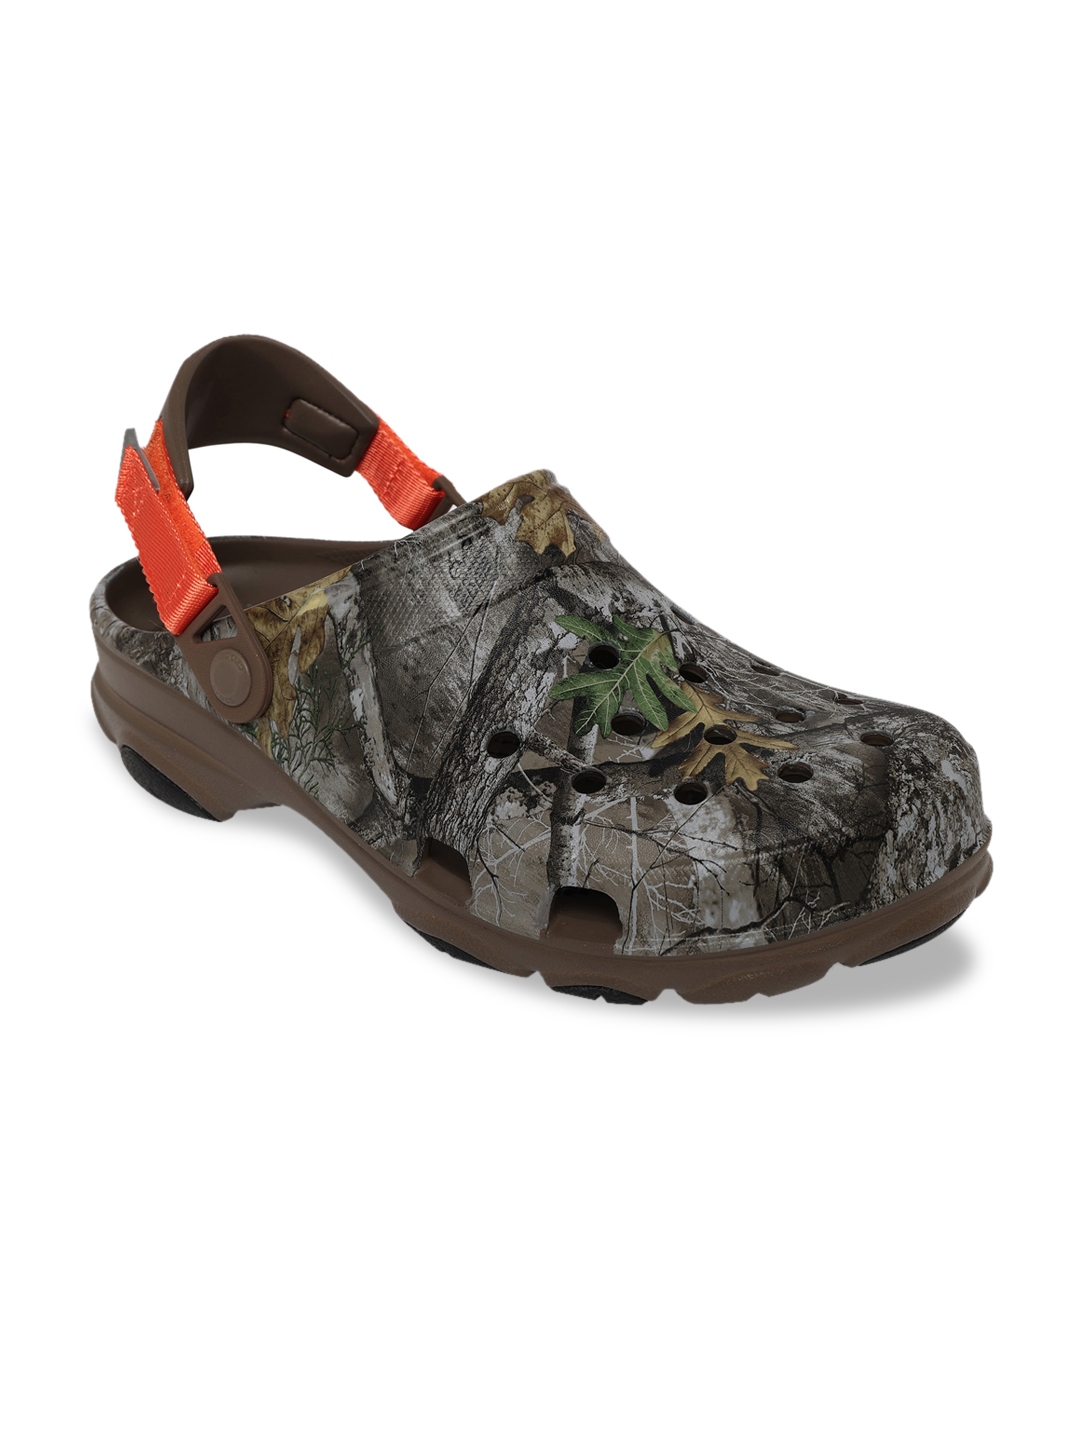 Buy Crocs Classic Men Brown Orange Printed Clogs - Sandals for Men ...